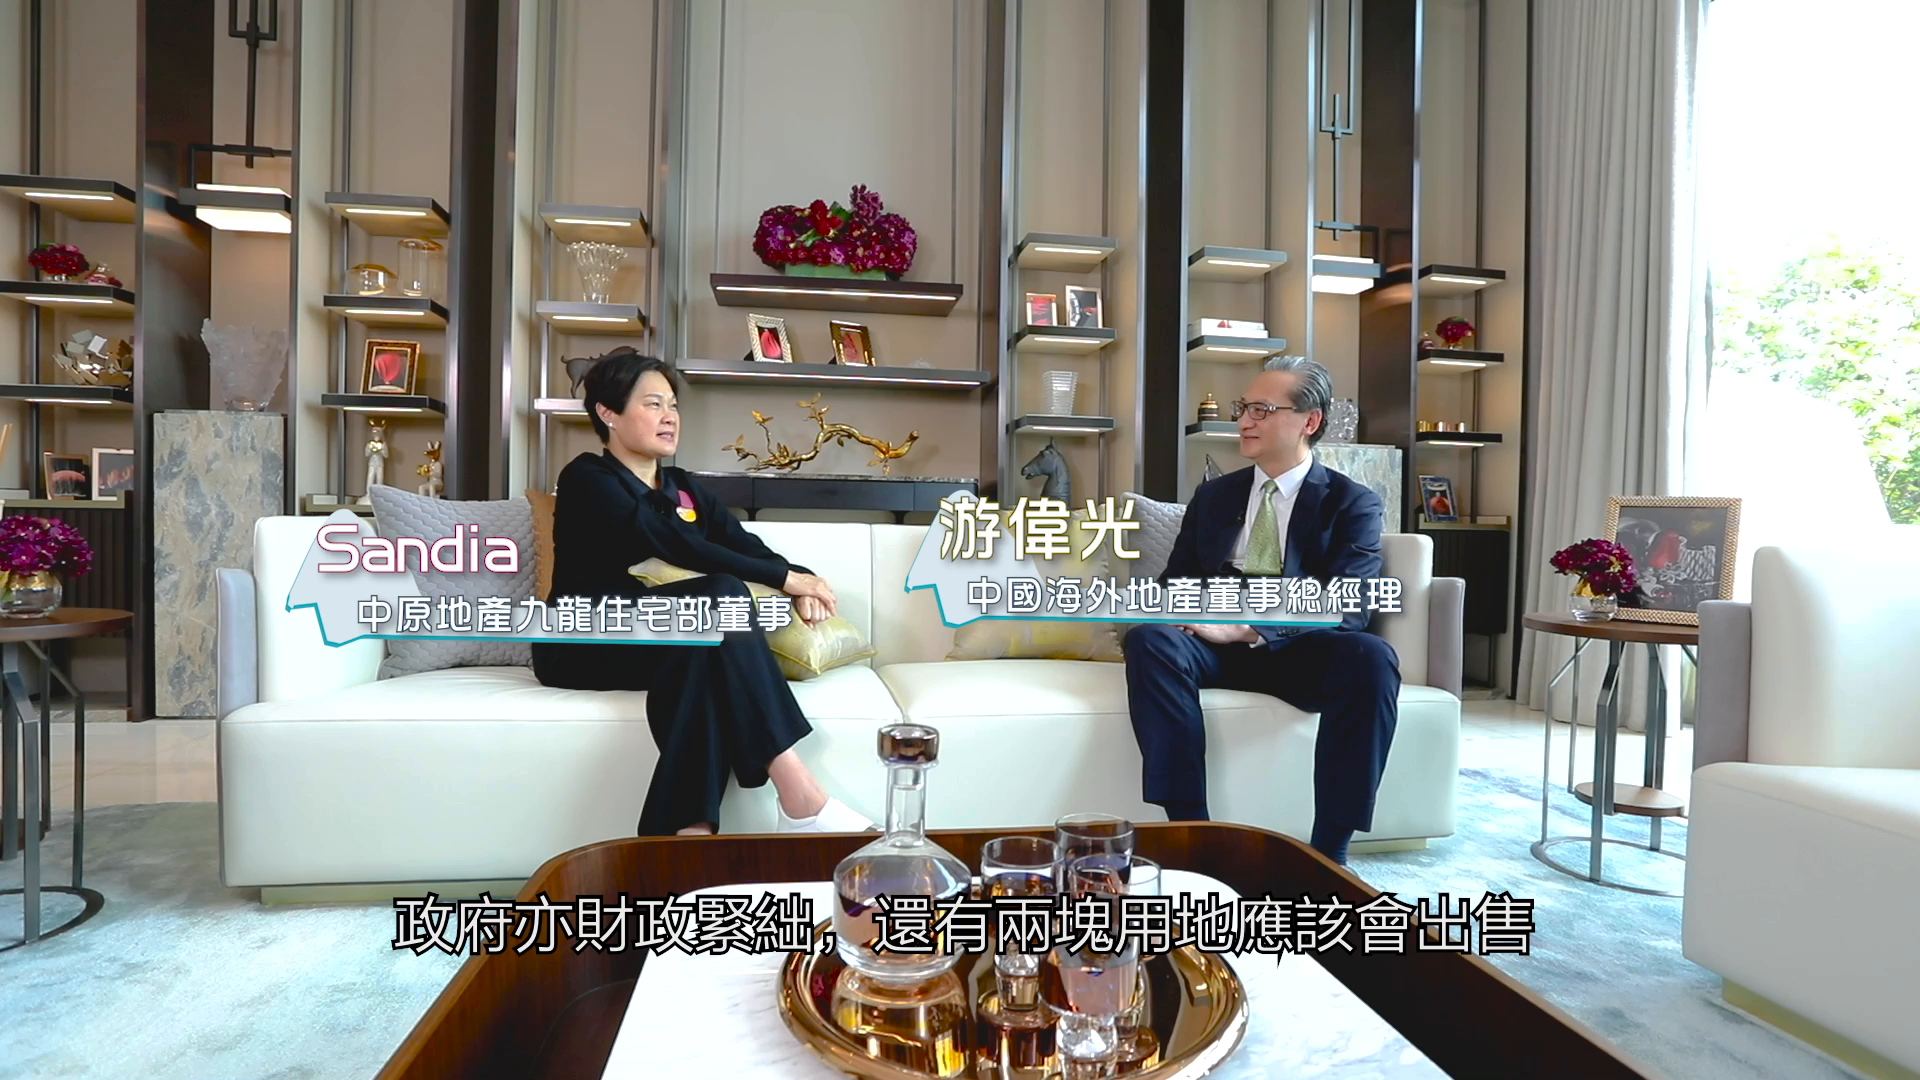 View@啟德 發展商系列 中國海外第四集 透視中國海外銷售策略